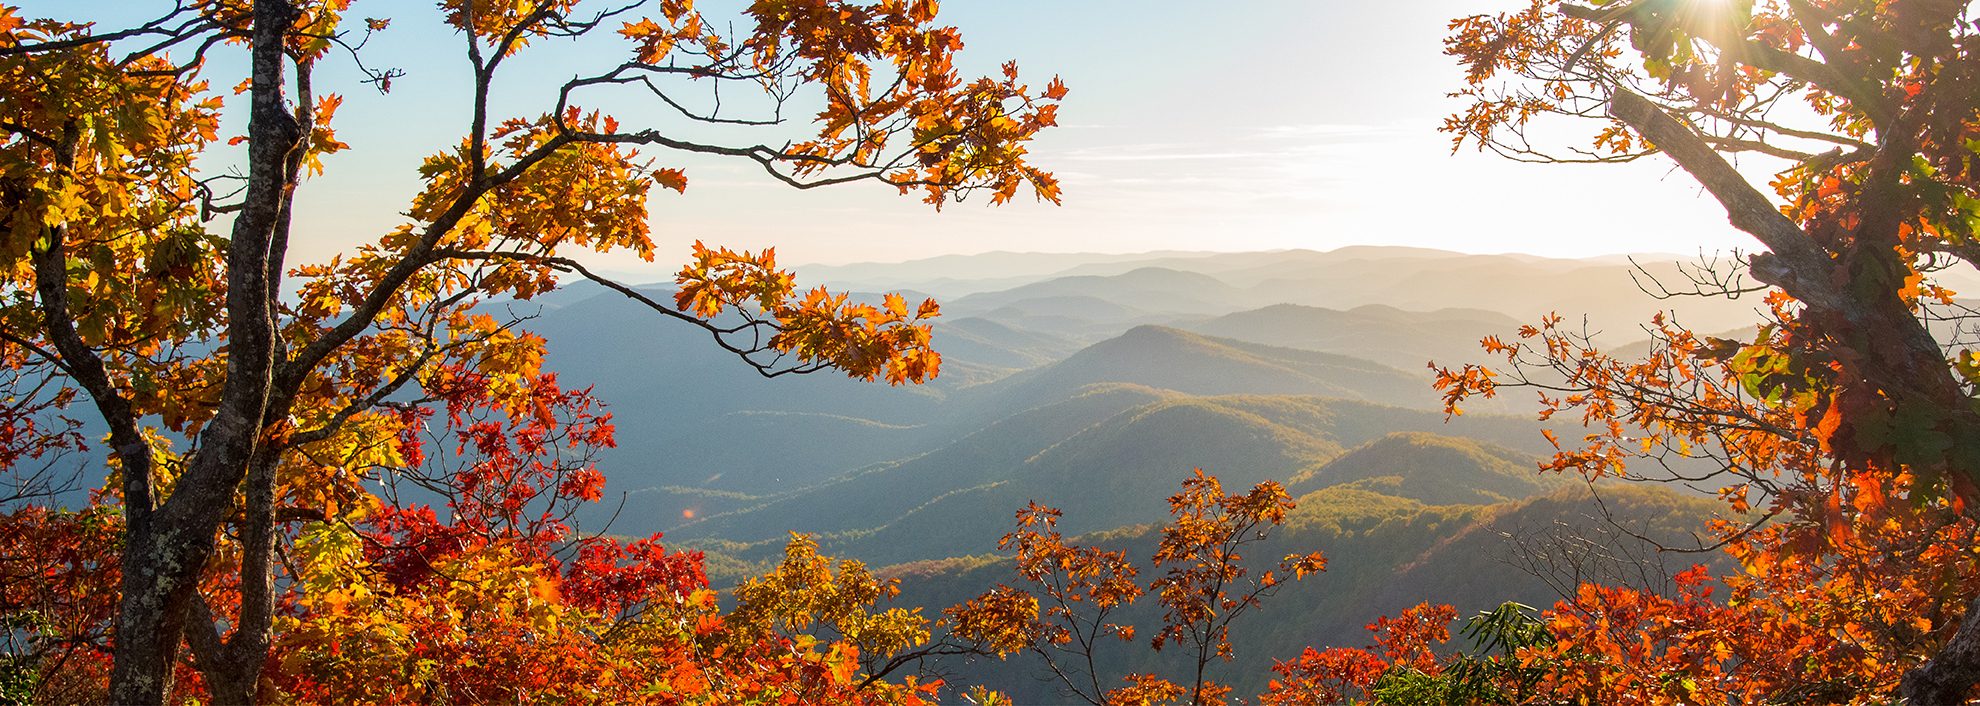 Smoky Mountains of Georgia